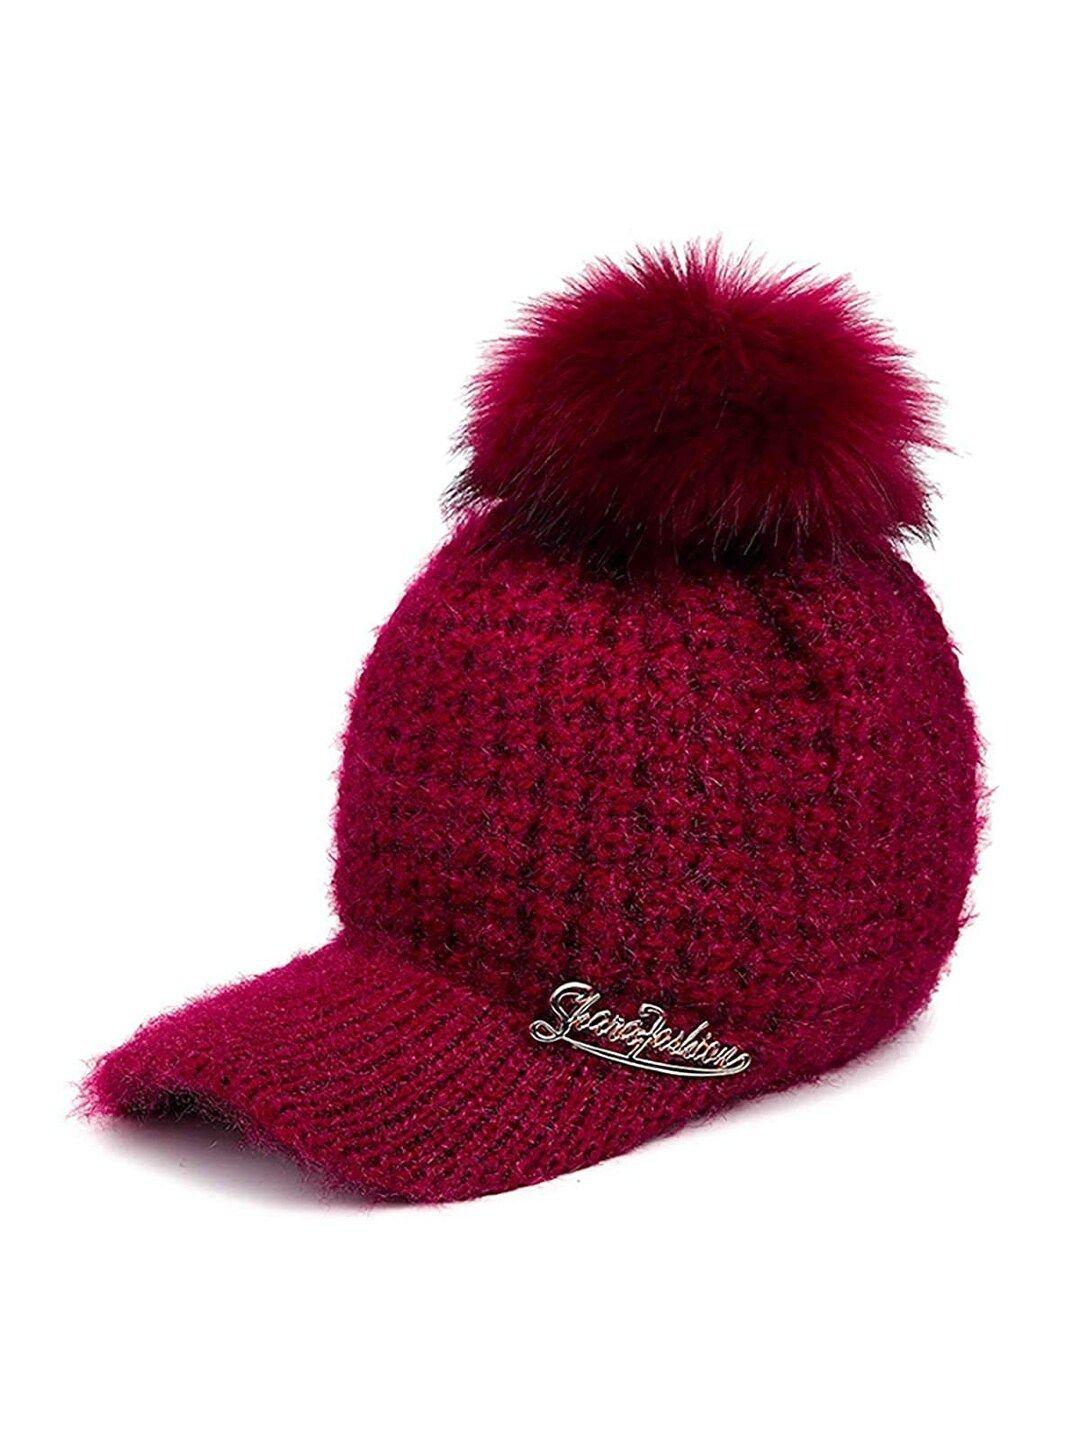 youstylo adults maroon woolen winter visor cap